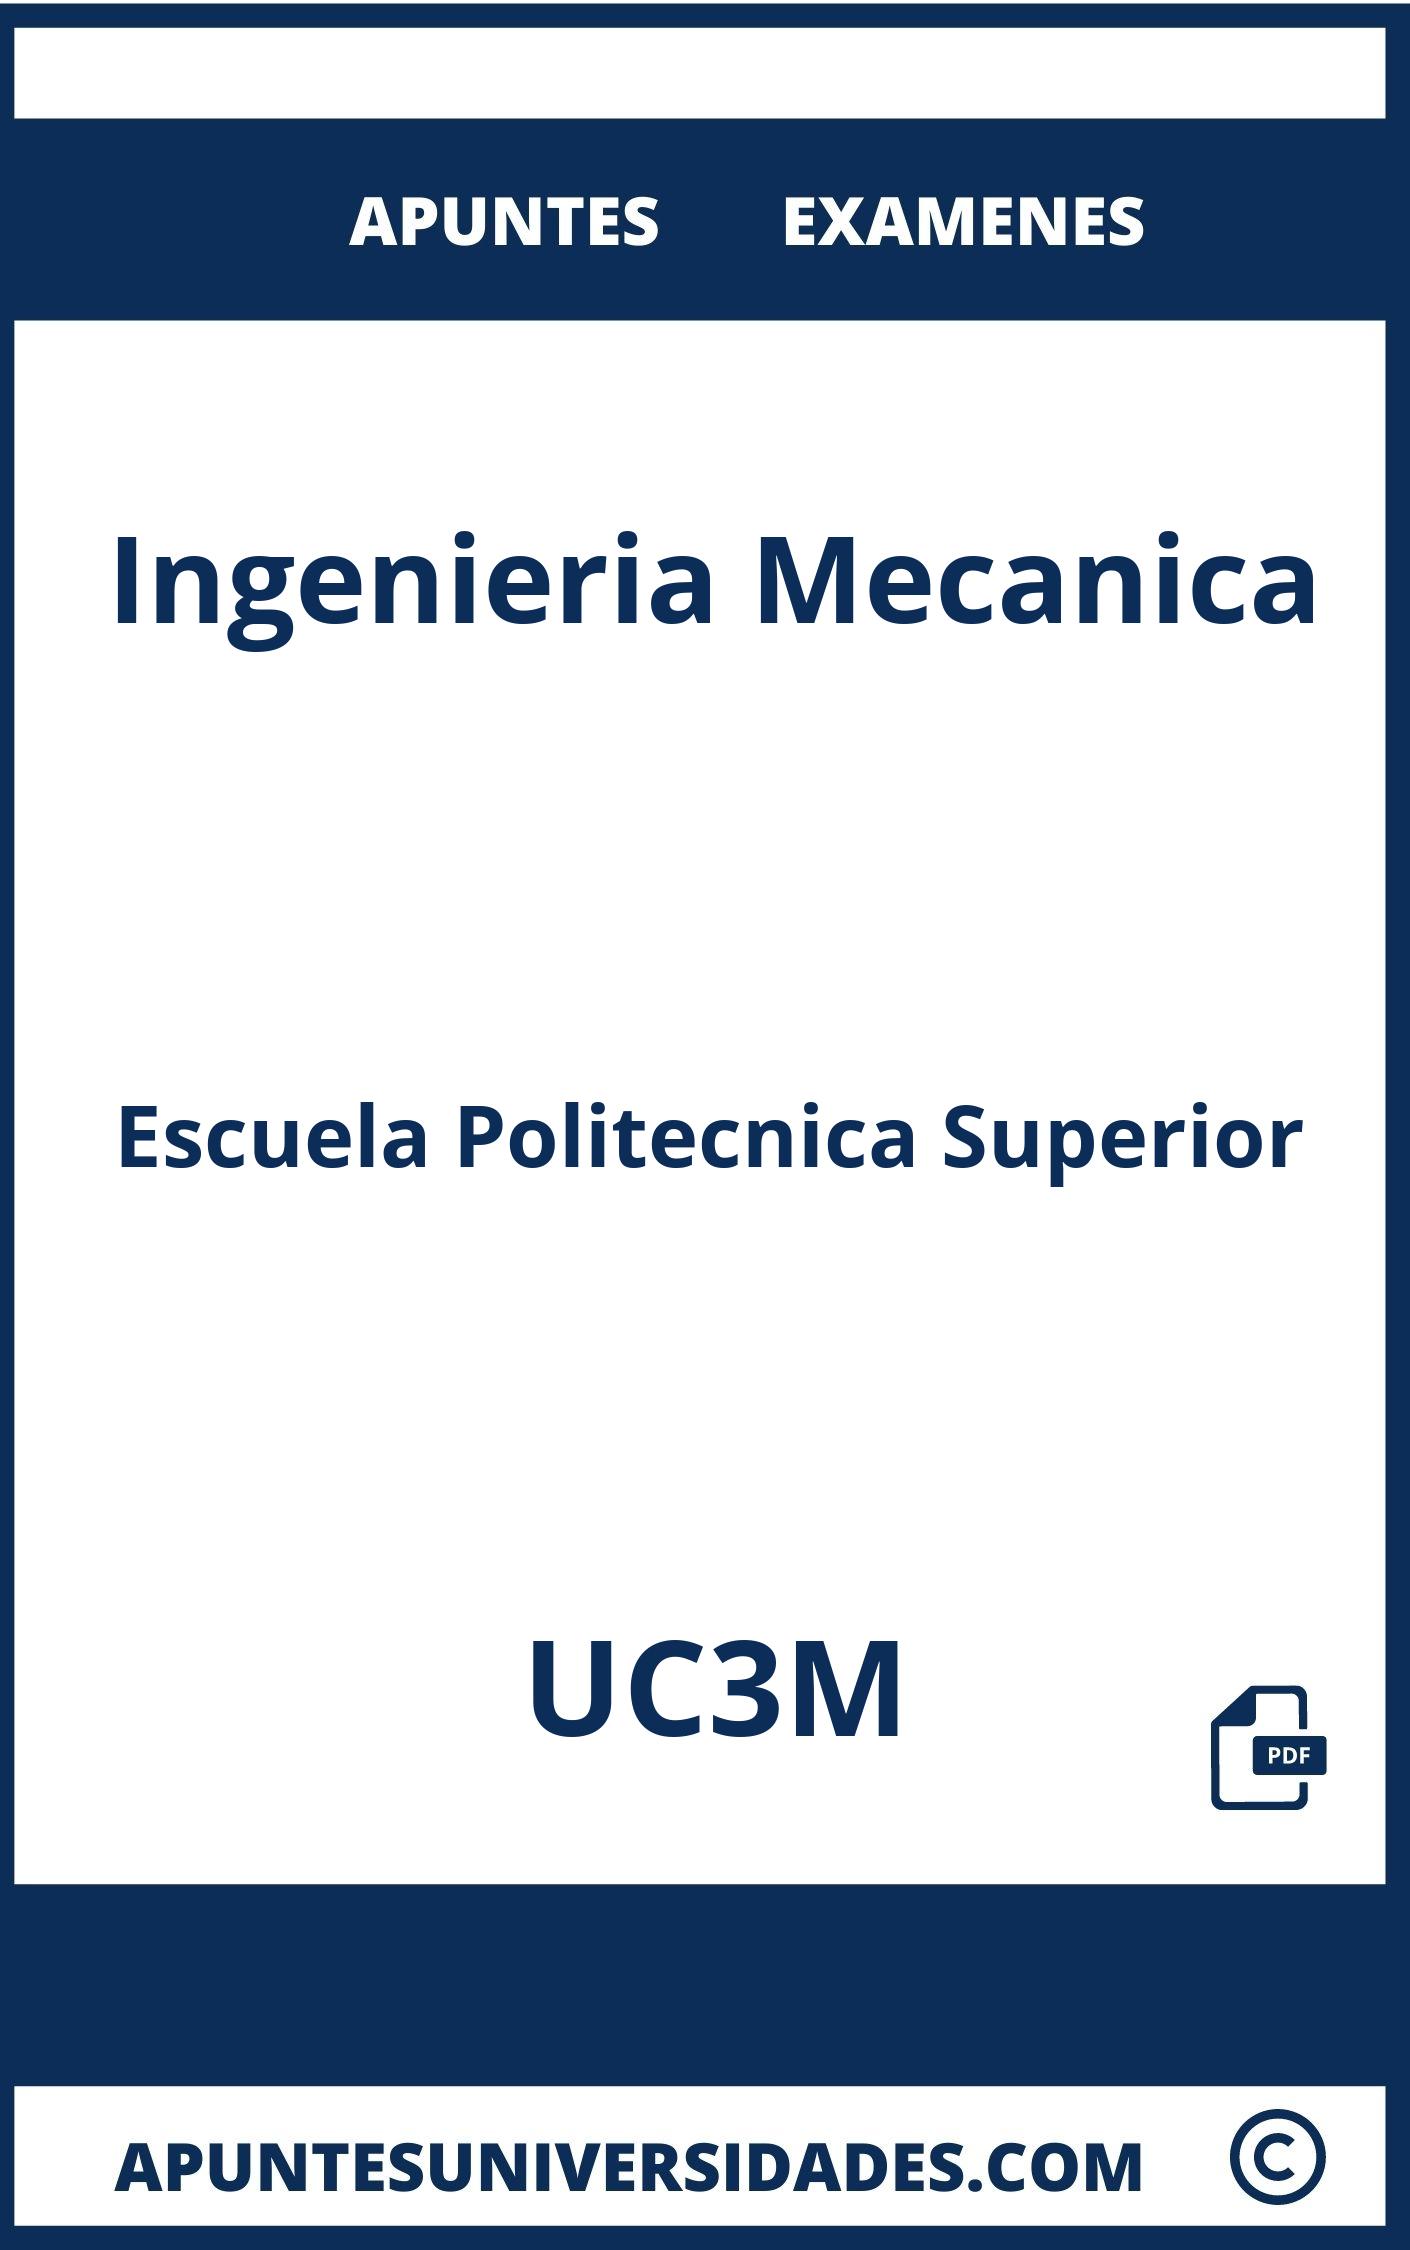 Apuntes Examenes Ingenieria Mecanica UC3M